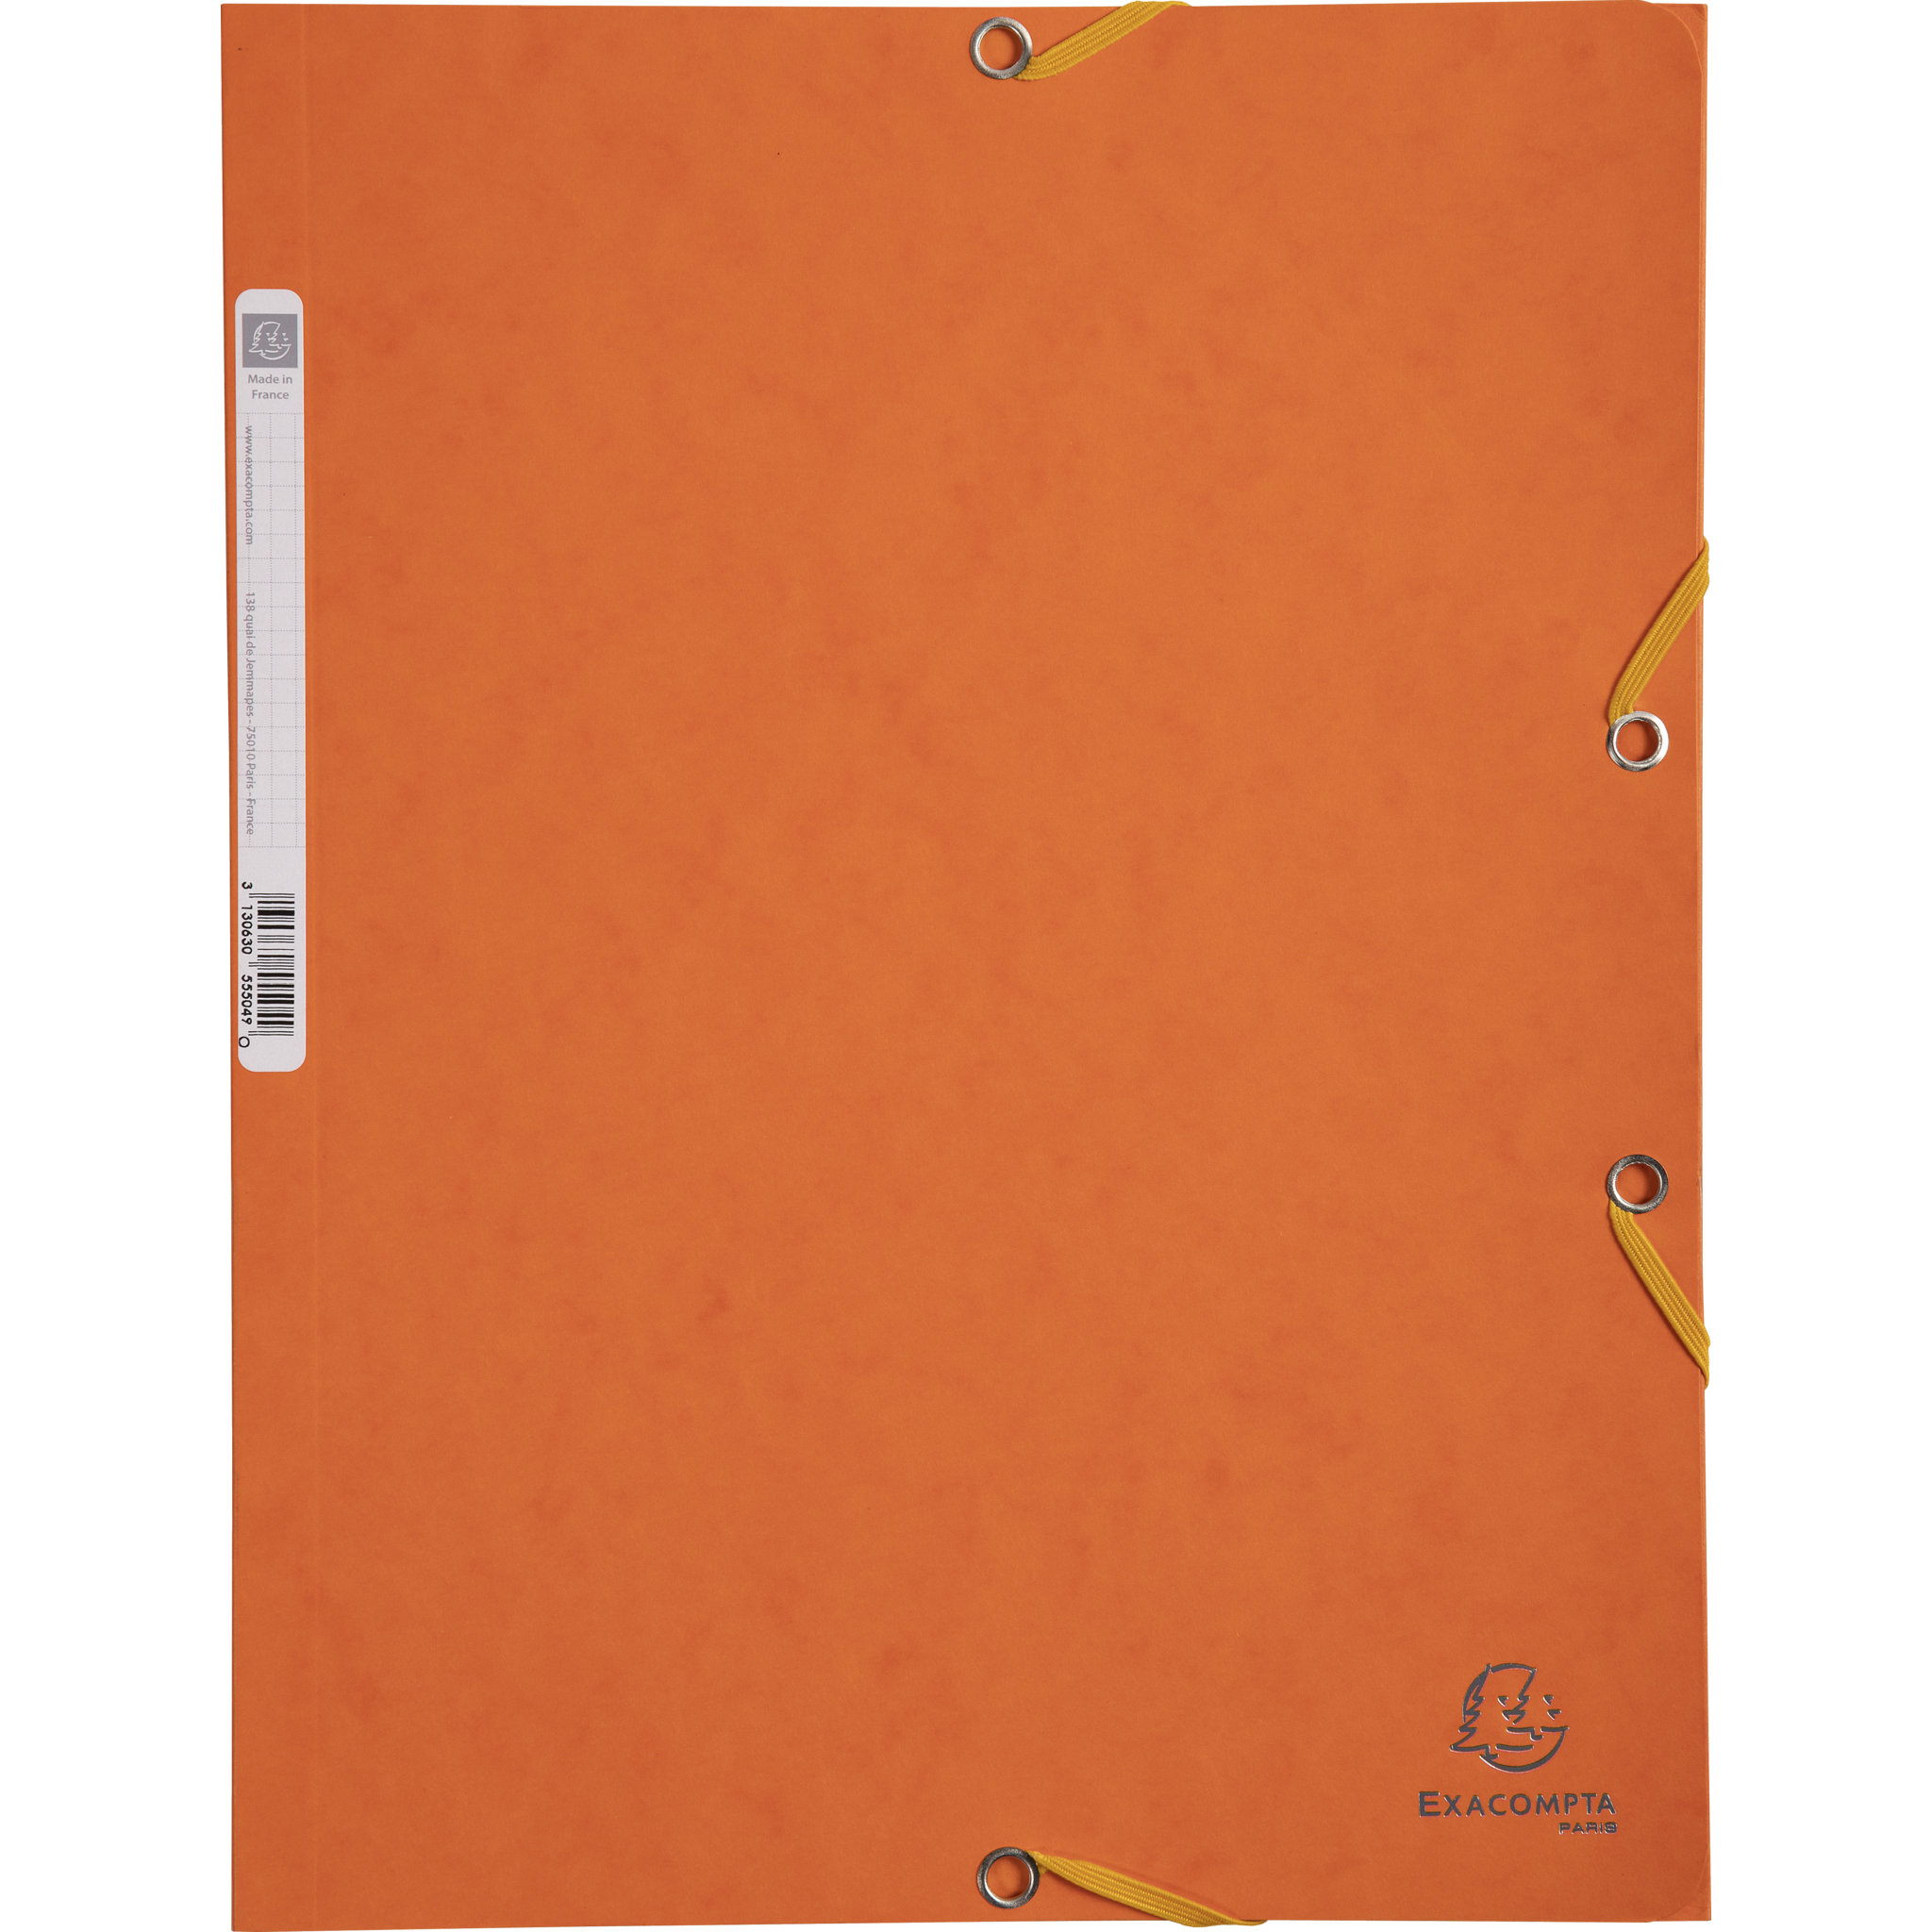 EXACOMPTA Sammelmappen mit Gummizug und 3 Klappen, Colorspan-Karton 400g/m2, für DIN A4 - Orange